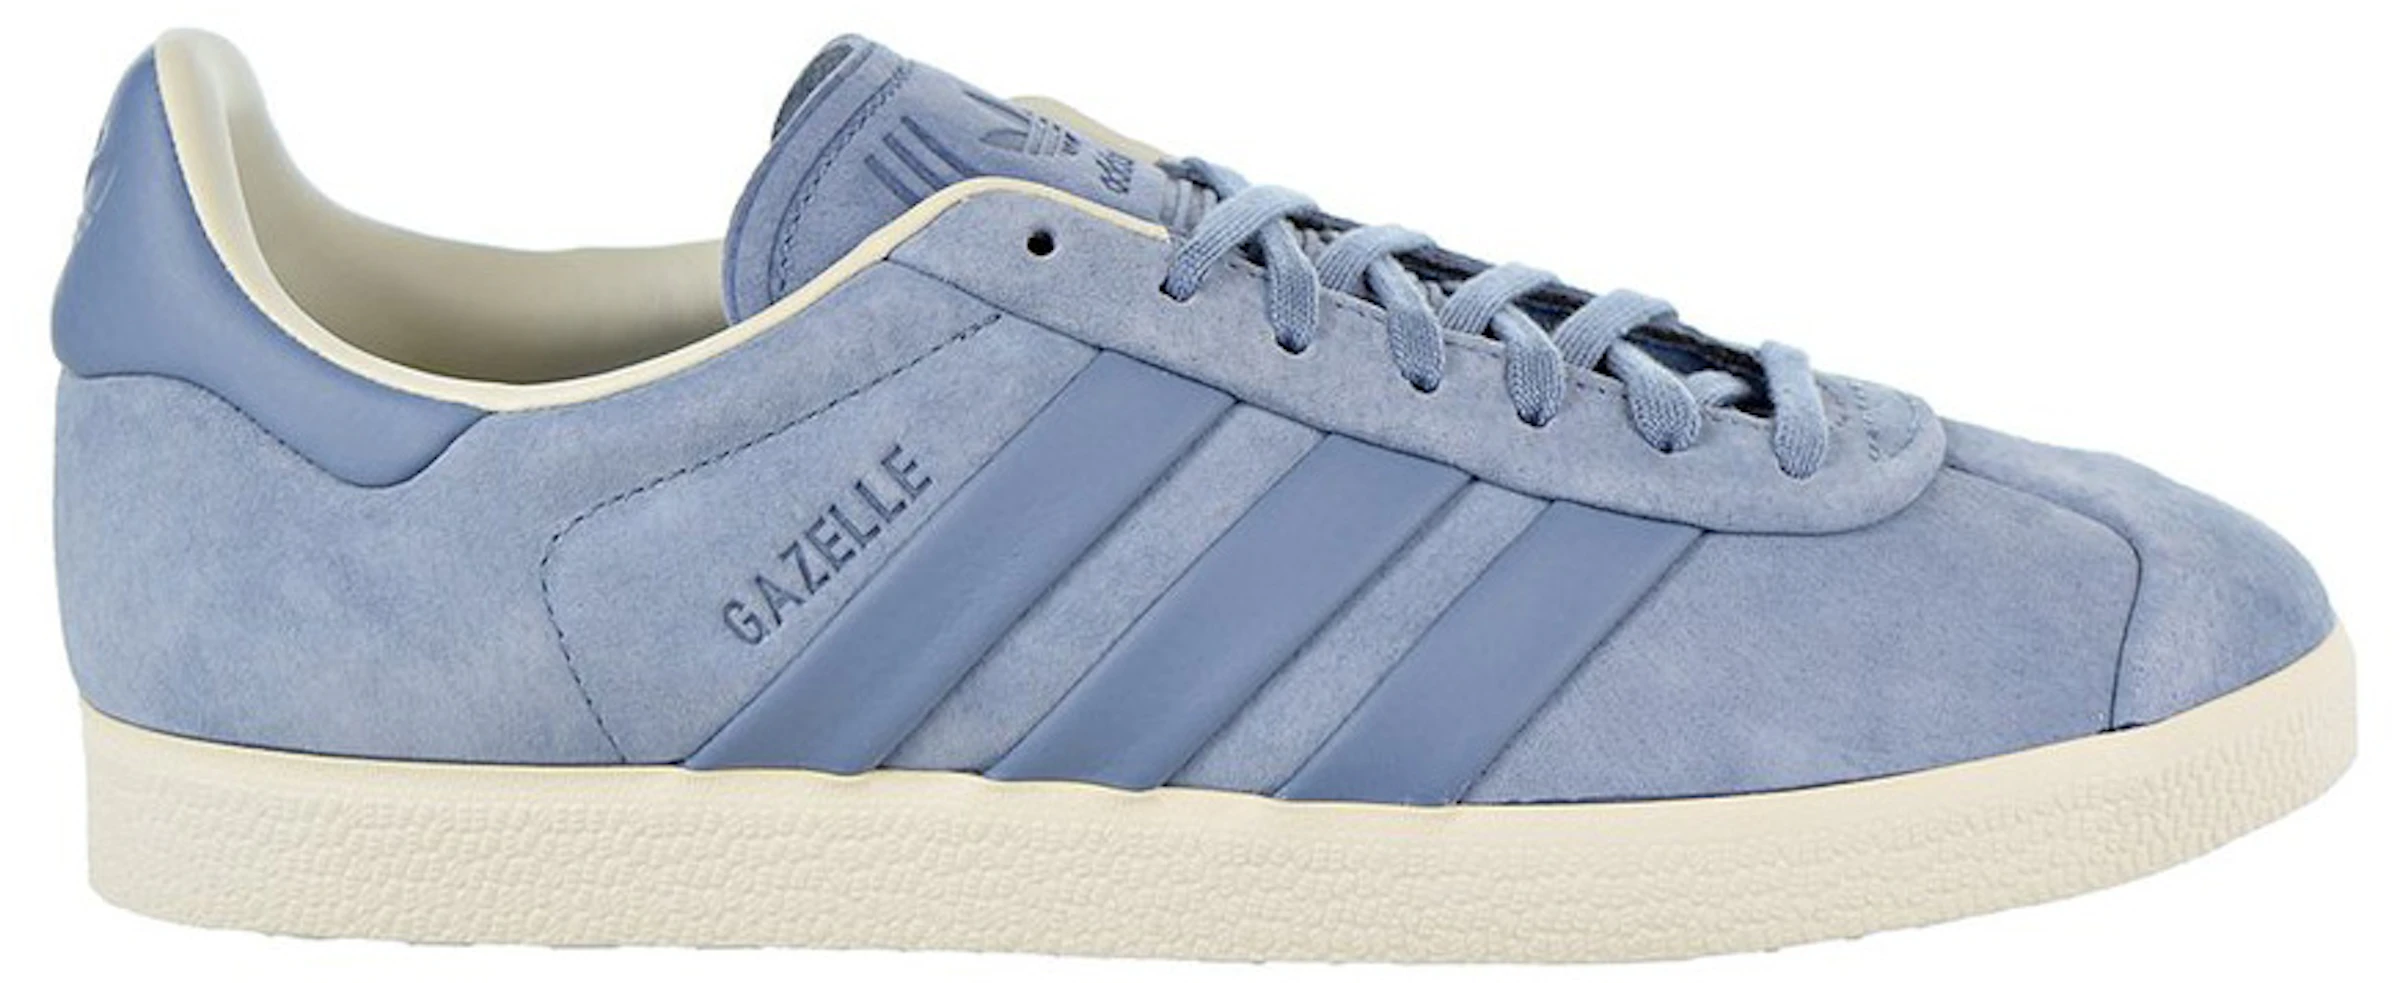 adidas Gazelle and Turn Grey B37813 -